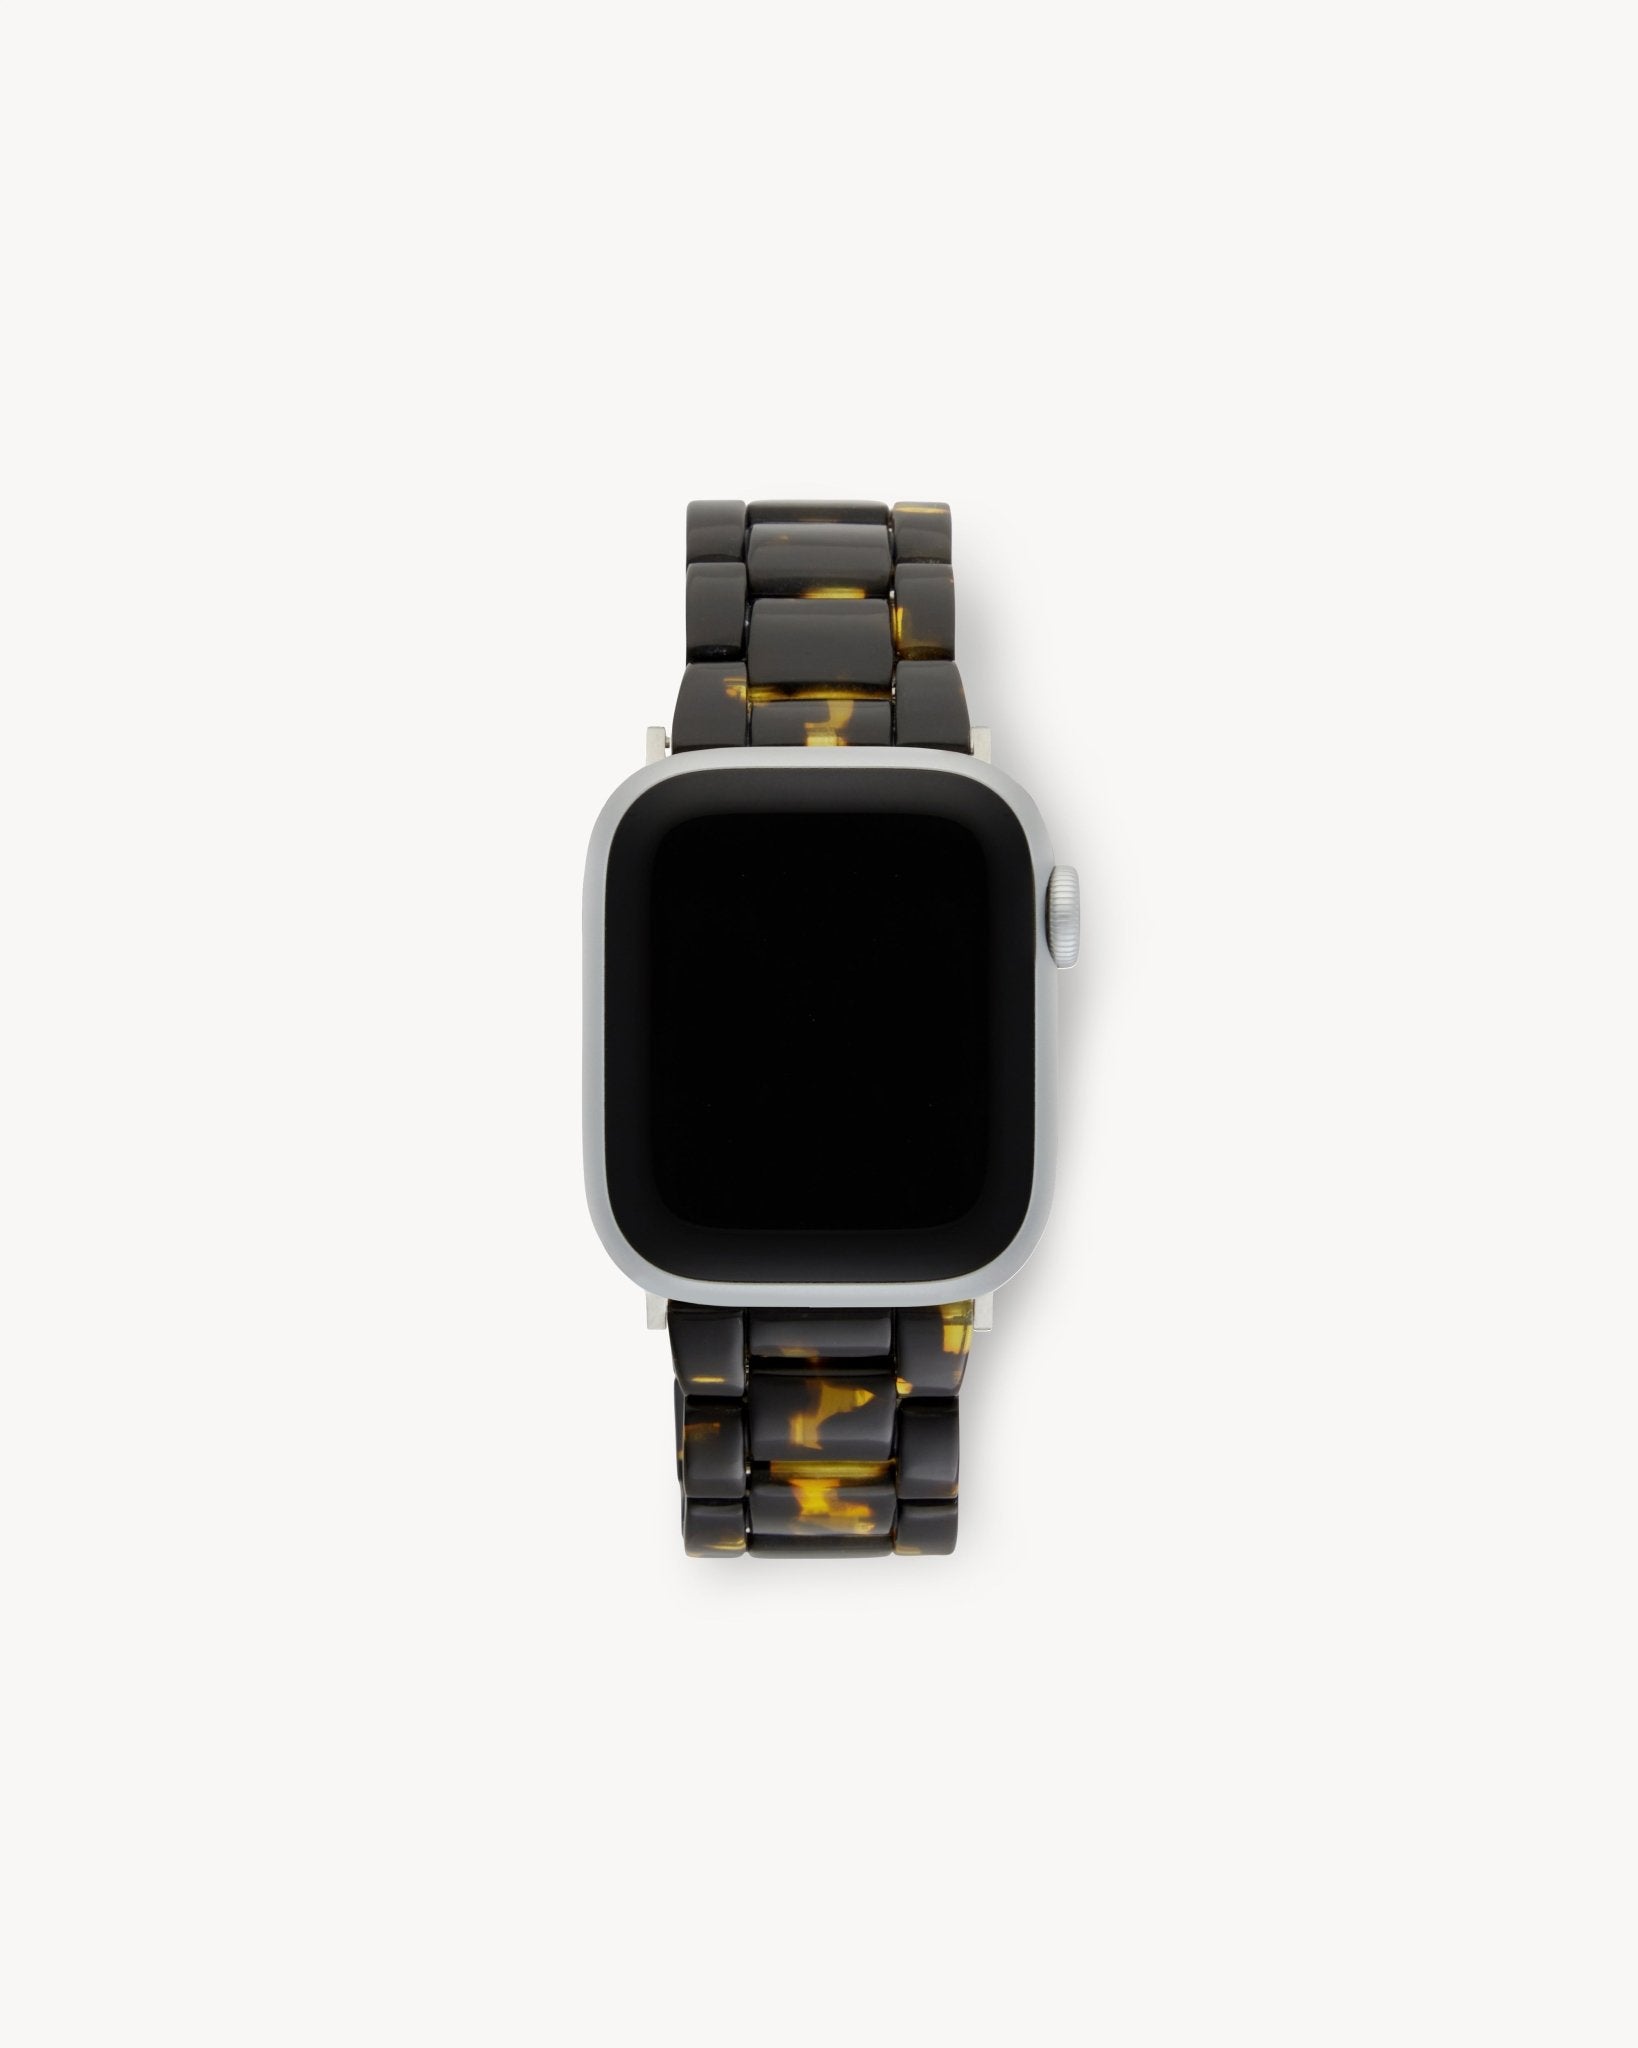 MACHETE Apple Watch Band in Dark Tortoise